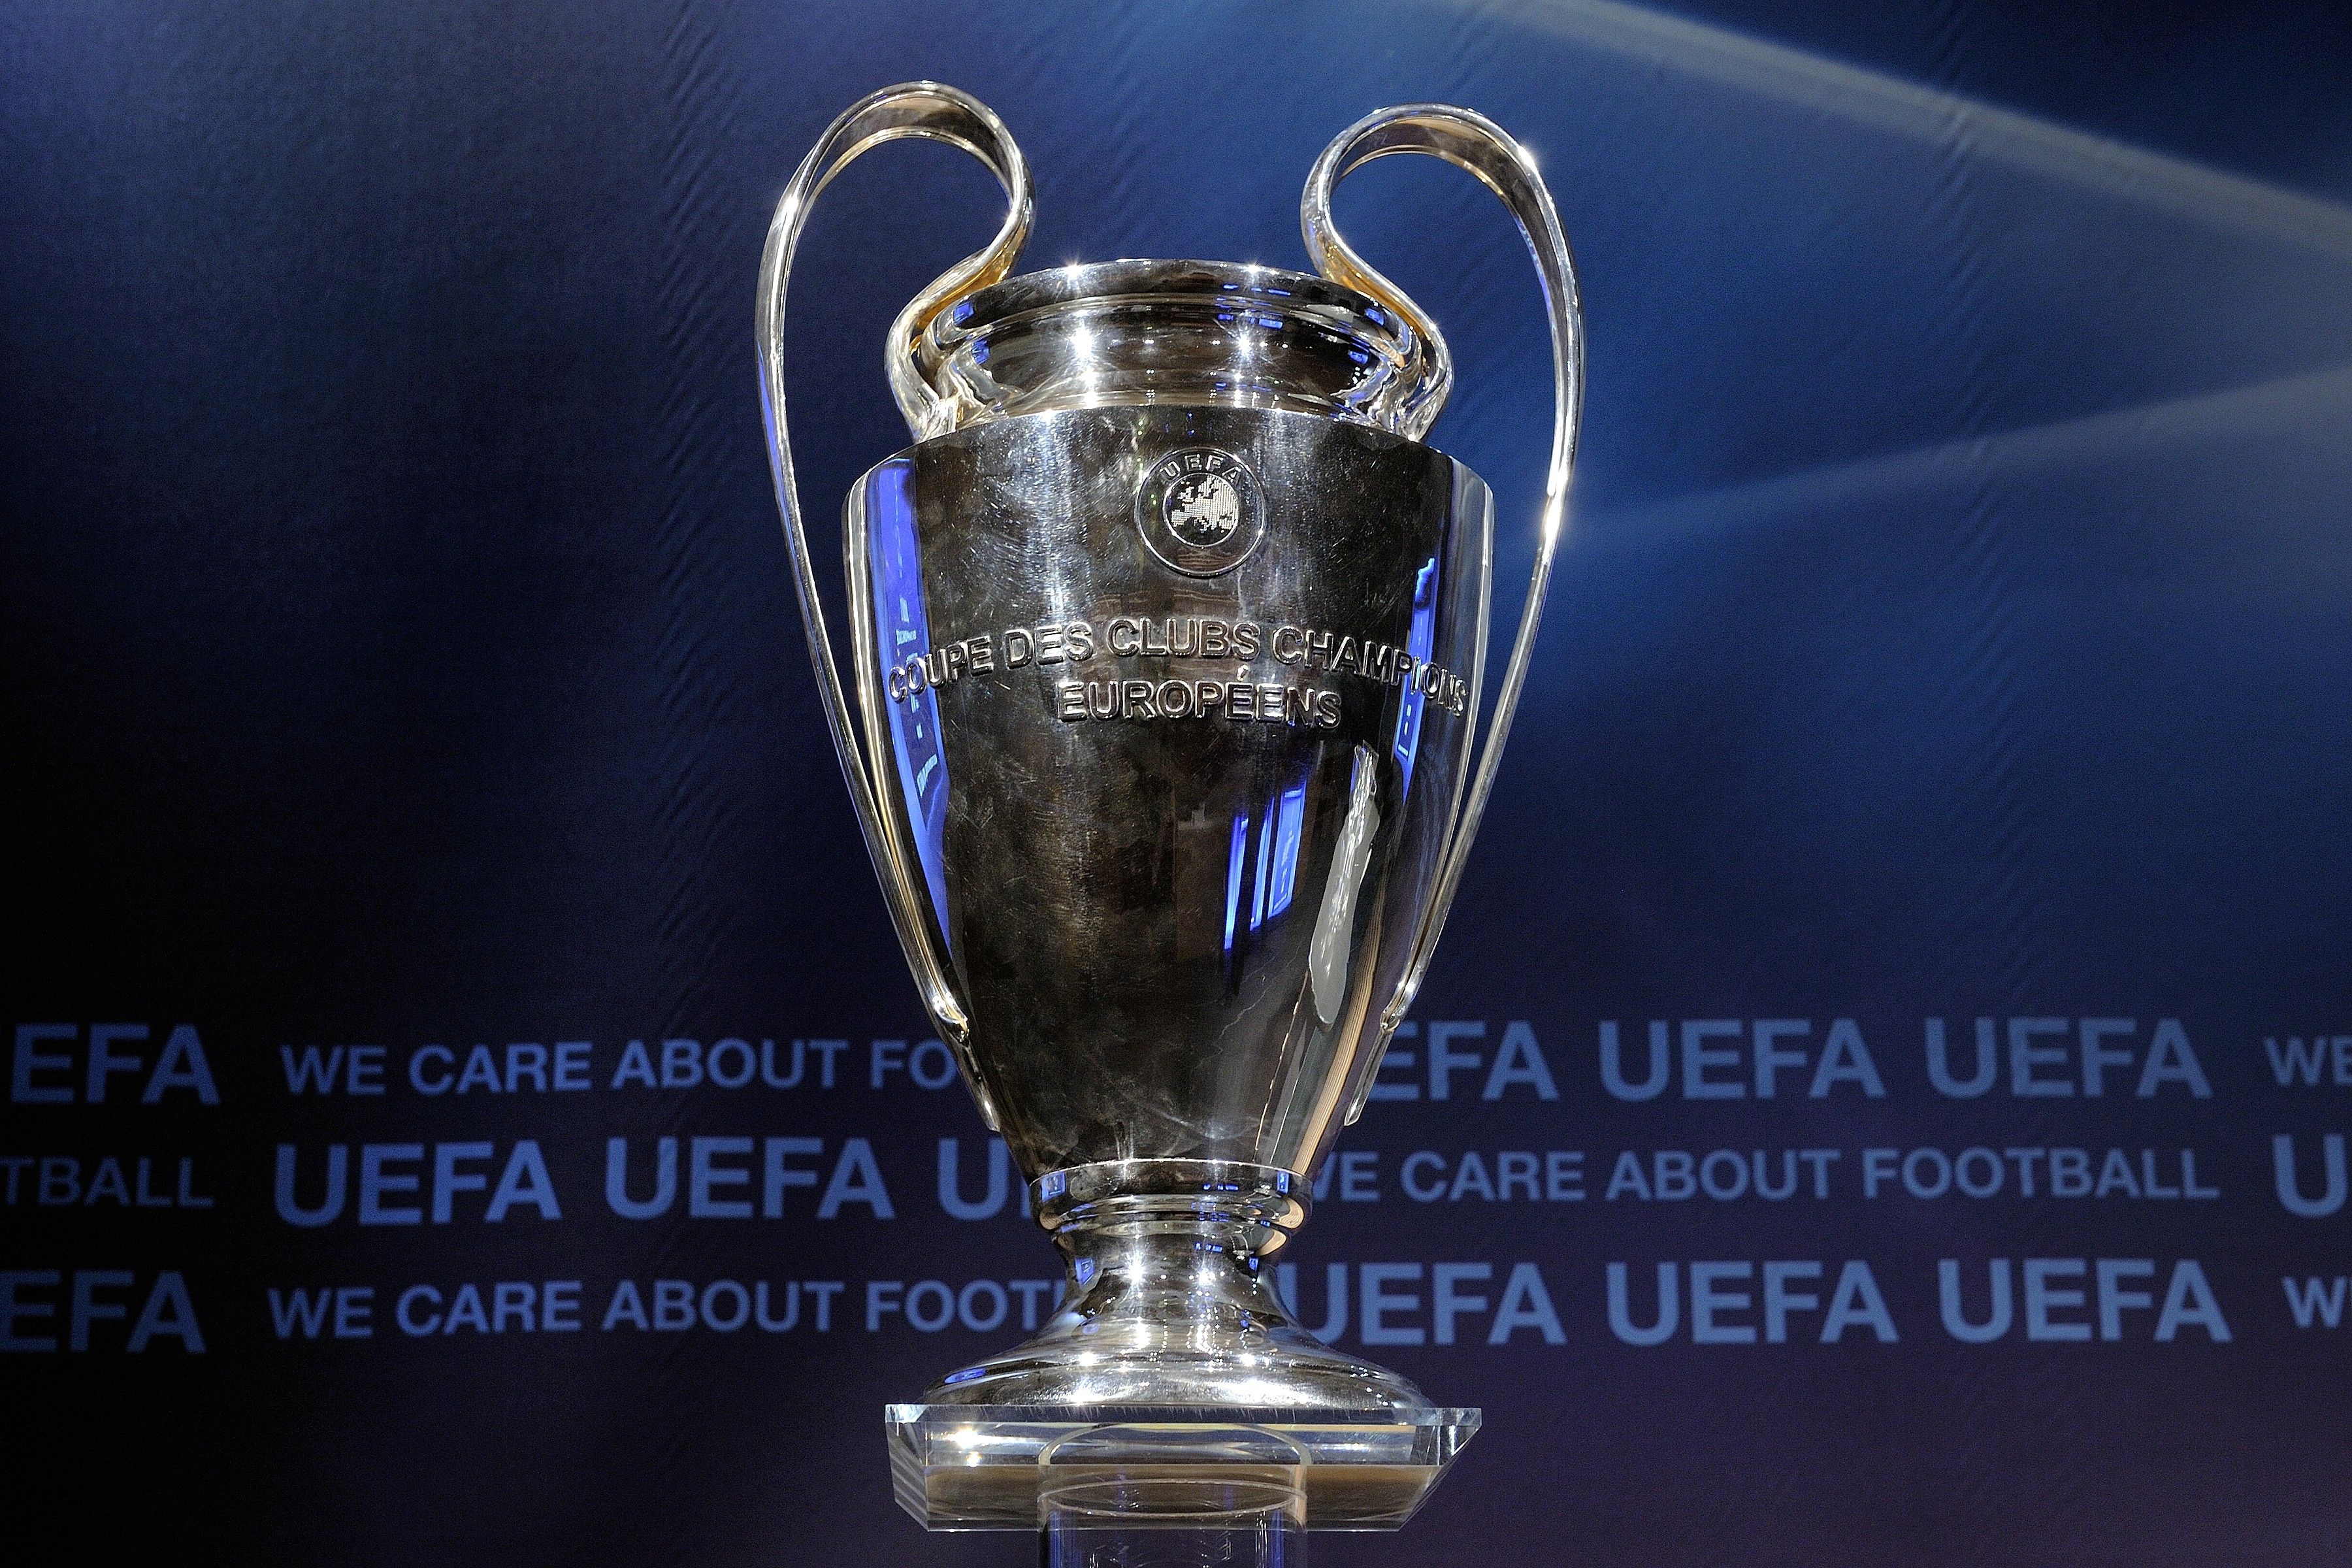 UEFA Champions League Trophy. Champions league draw, Champions league, Champions league trophy